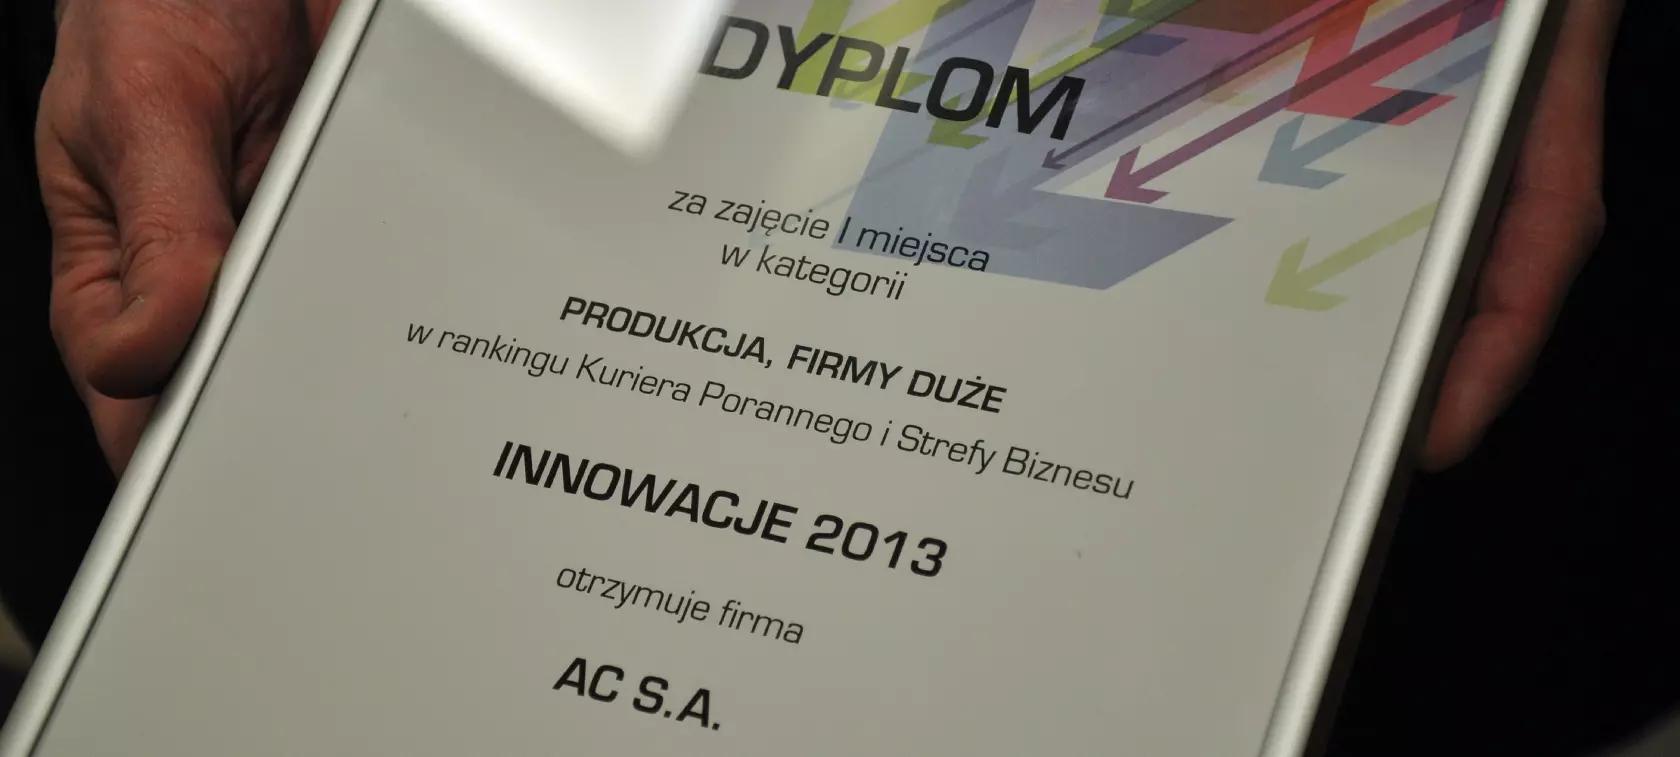 AC S.A. w rankingu Innowacje 2013